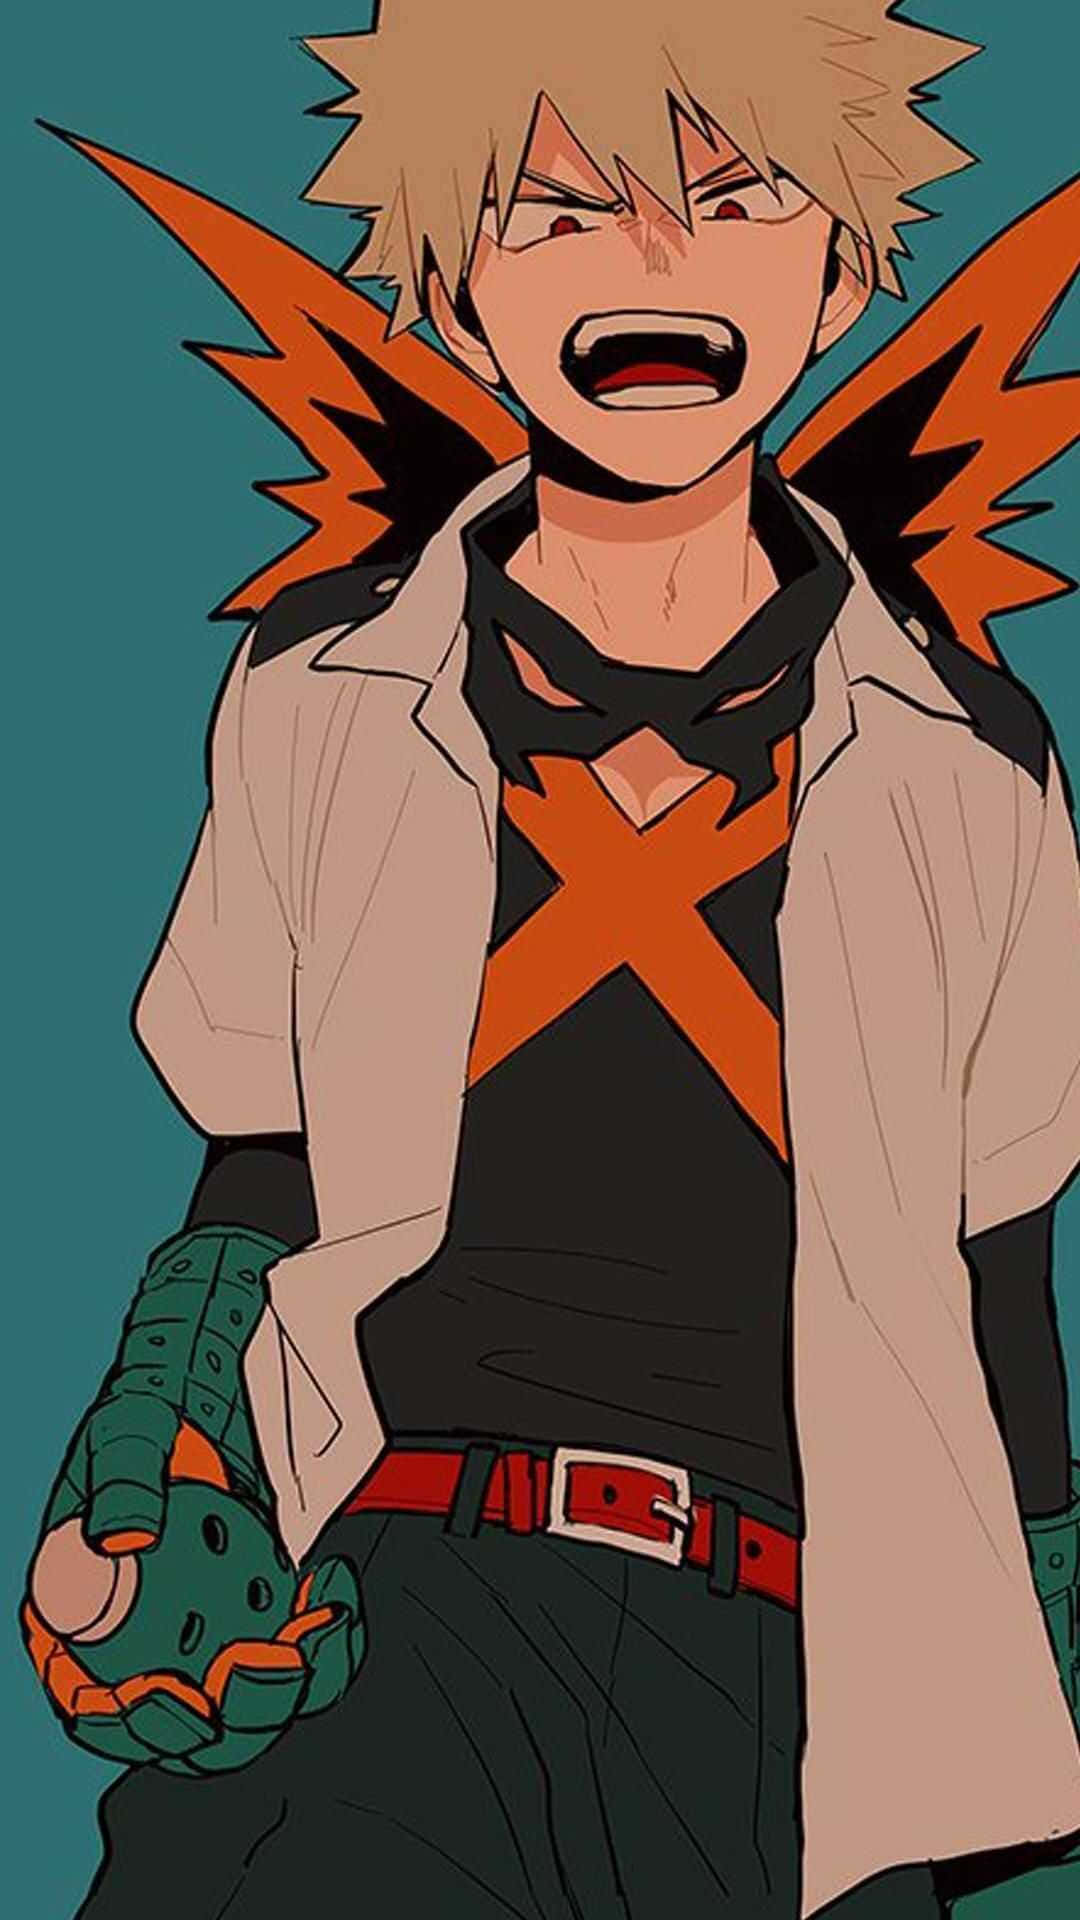 Bakugo, the fiery young hero Wallpaper